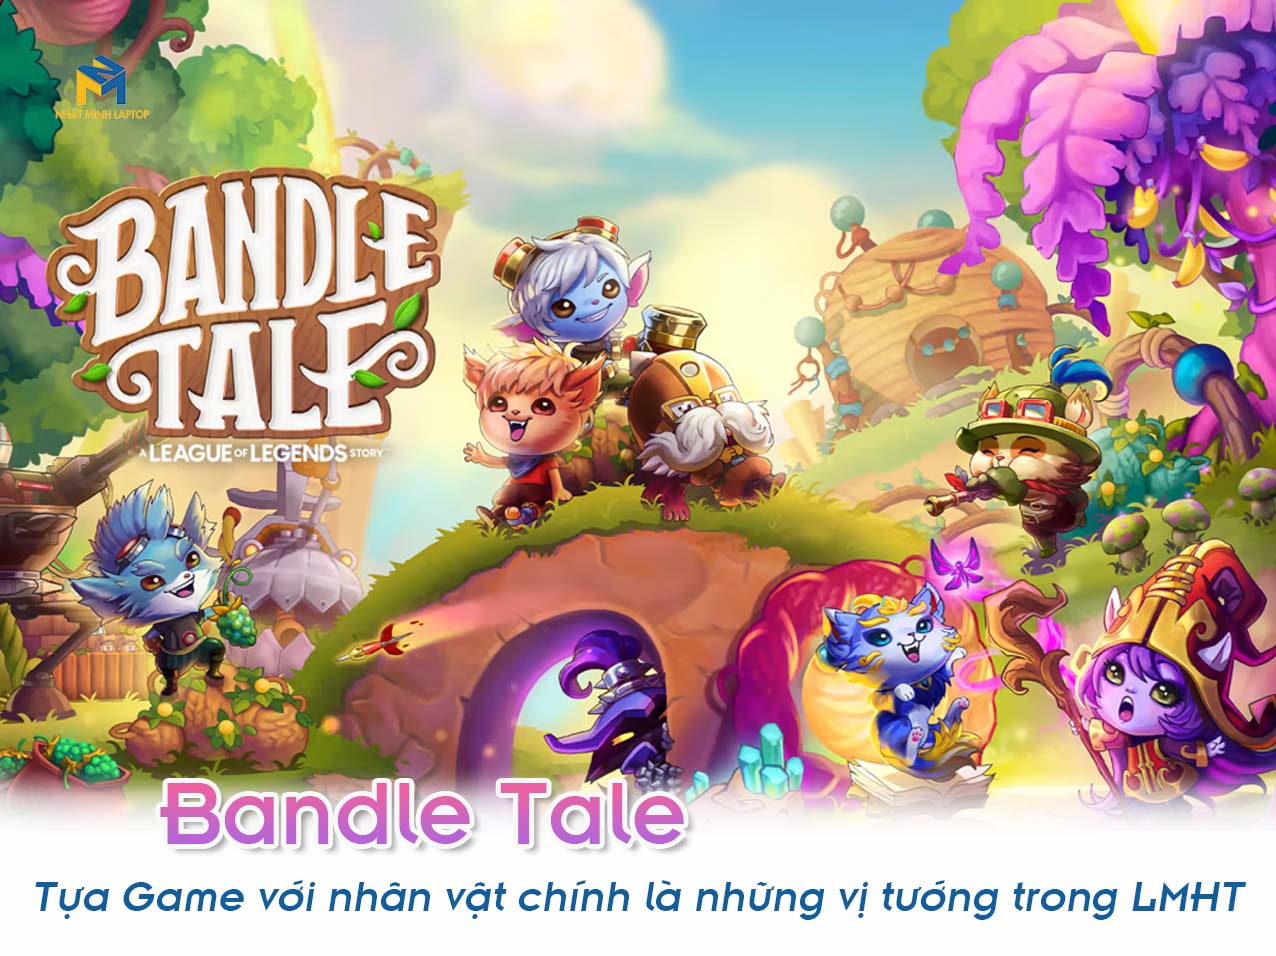 Bandle Tale tựa game mới với nhân vật chính là những vị tướng trong LMHT